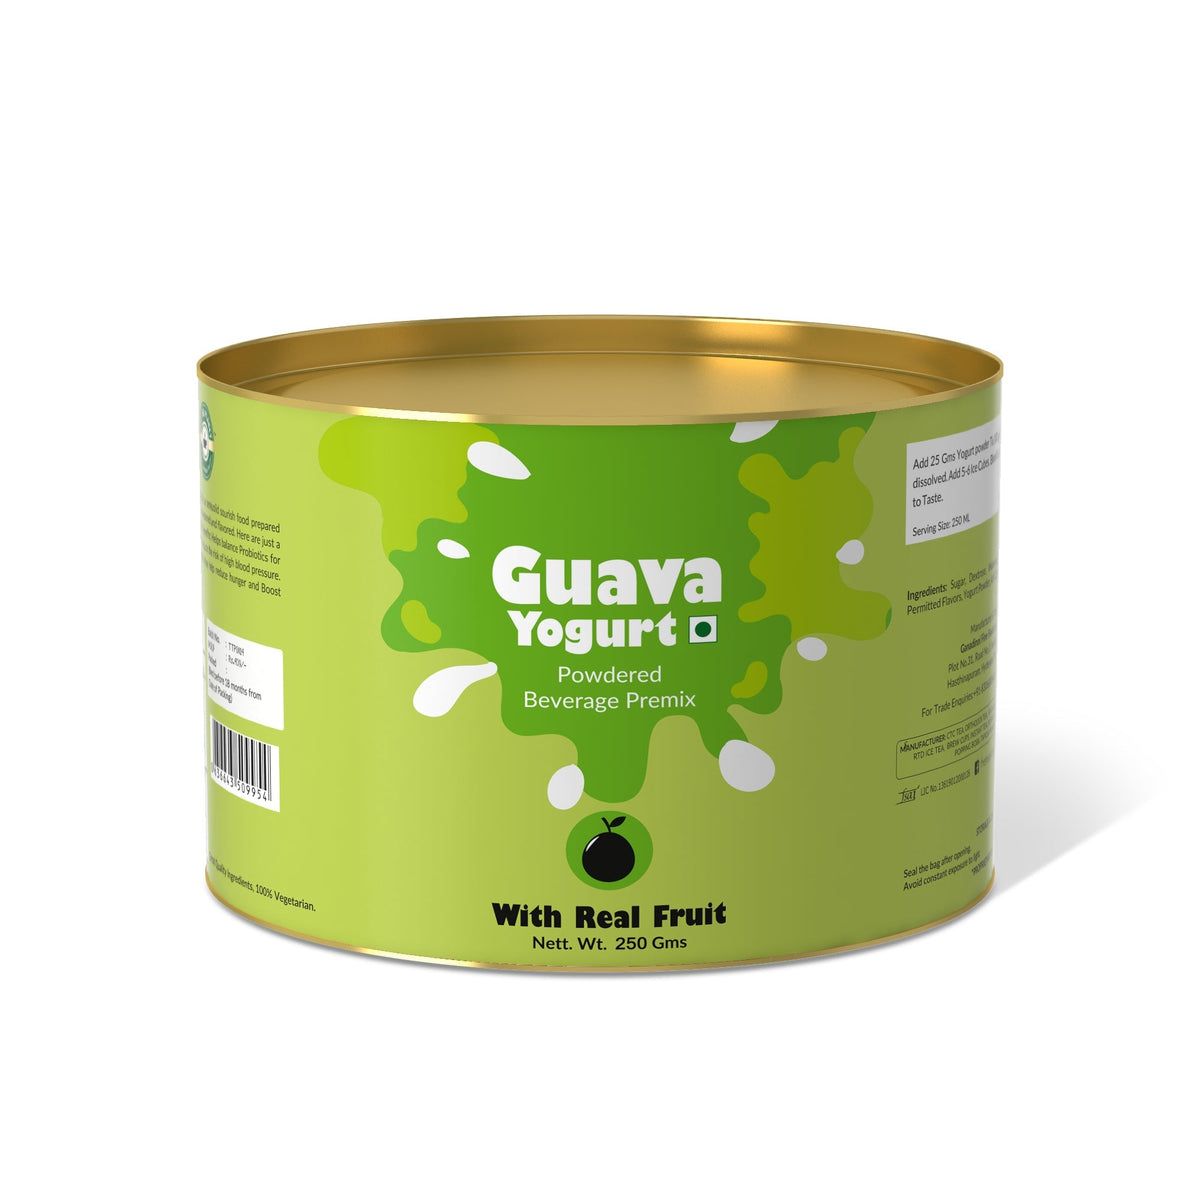 Guava Yogurt Mix - 800 gms